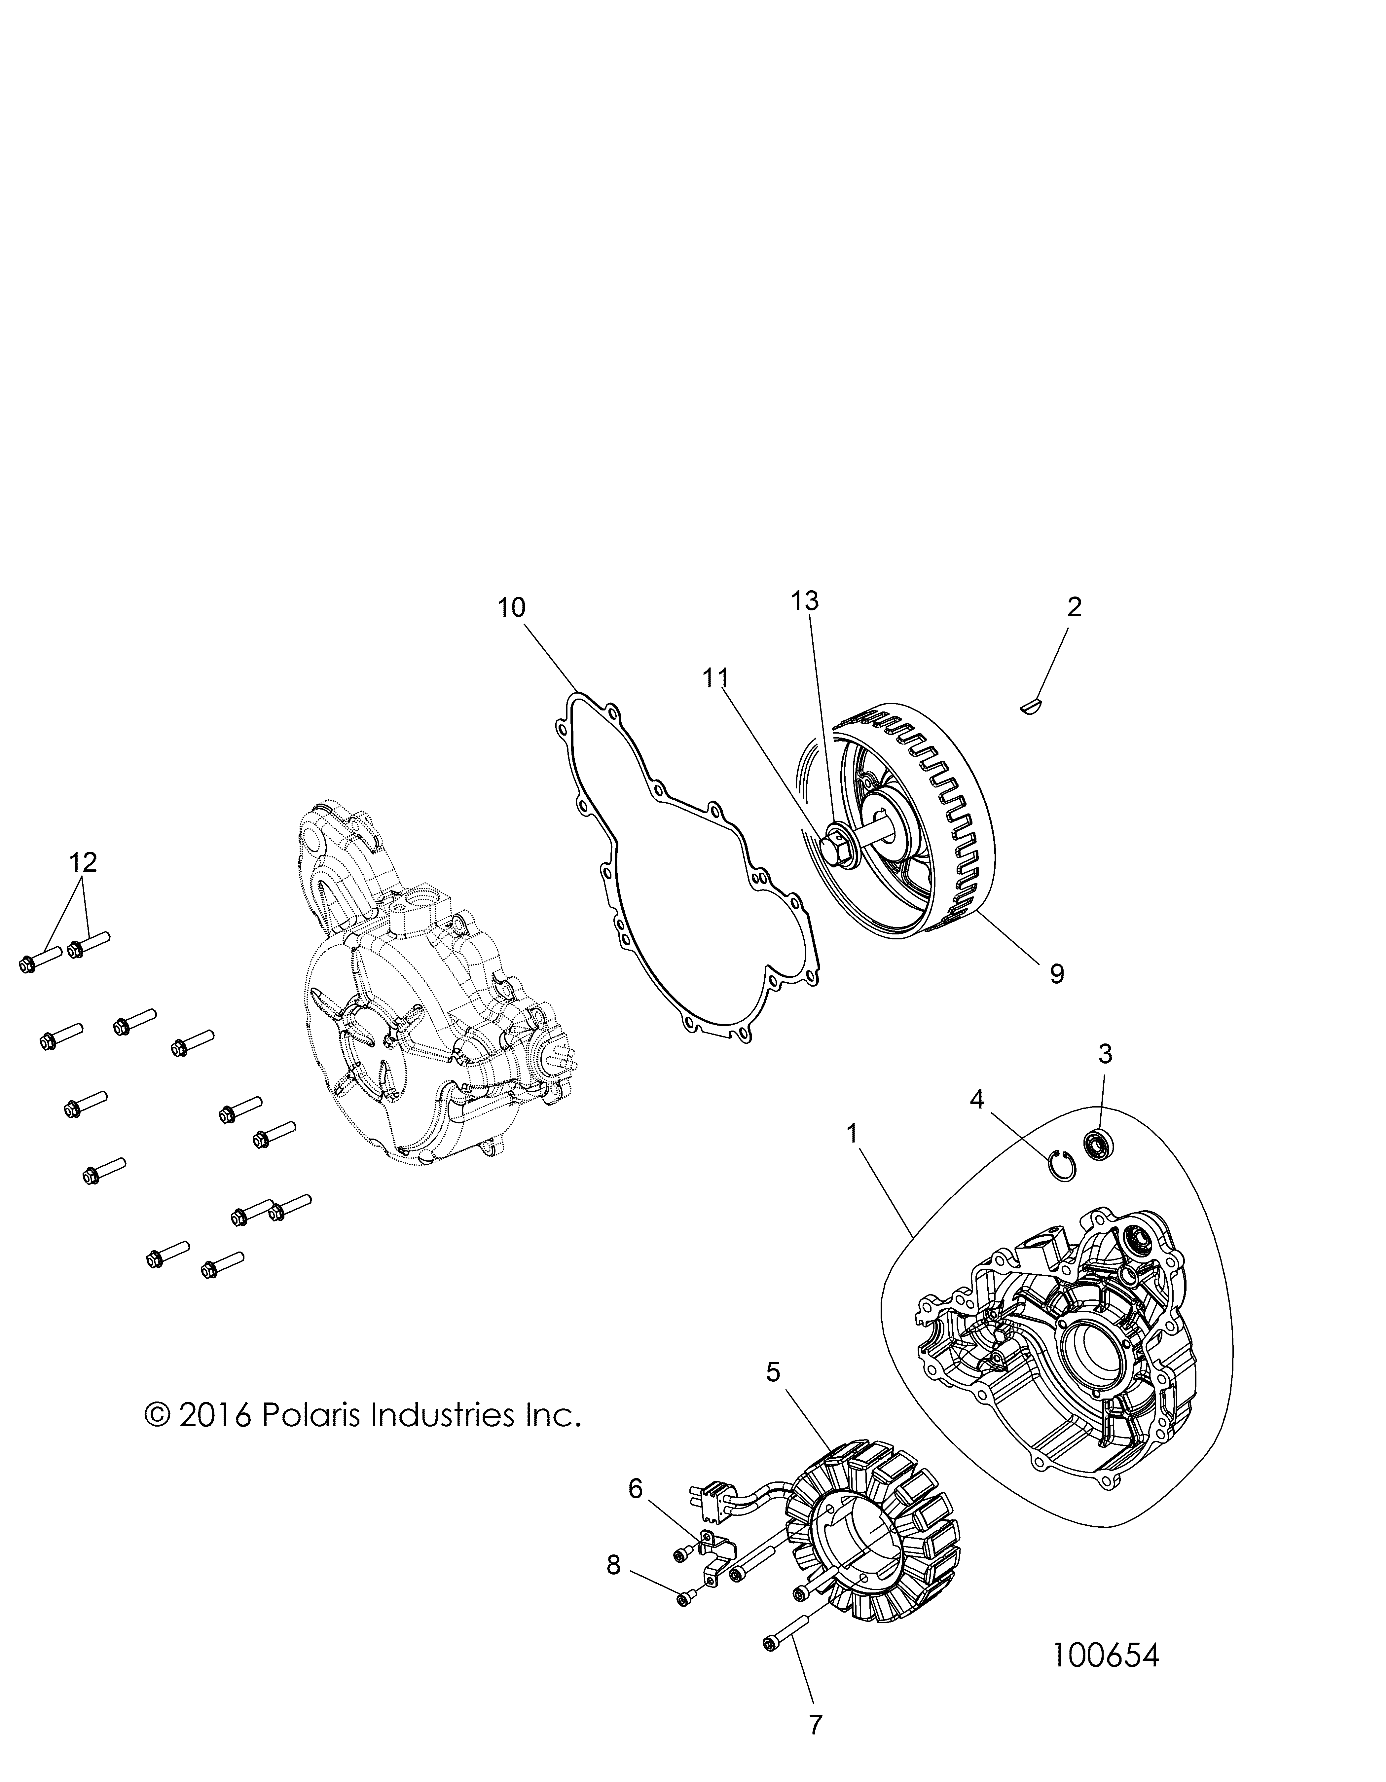 Foto diagrama Polaris que contem a peça 1204518